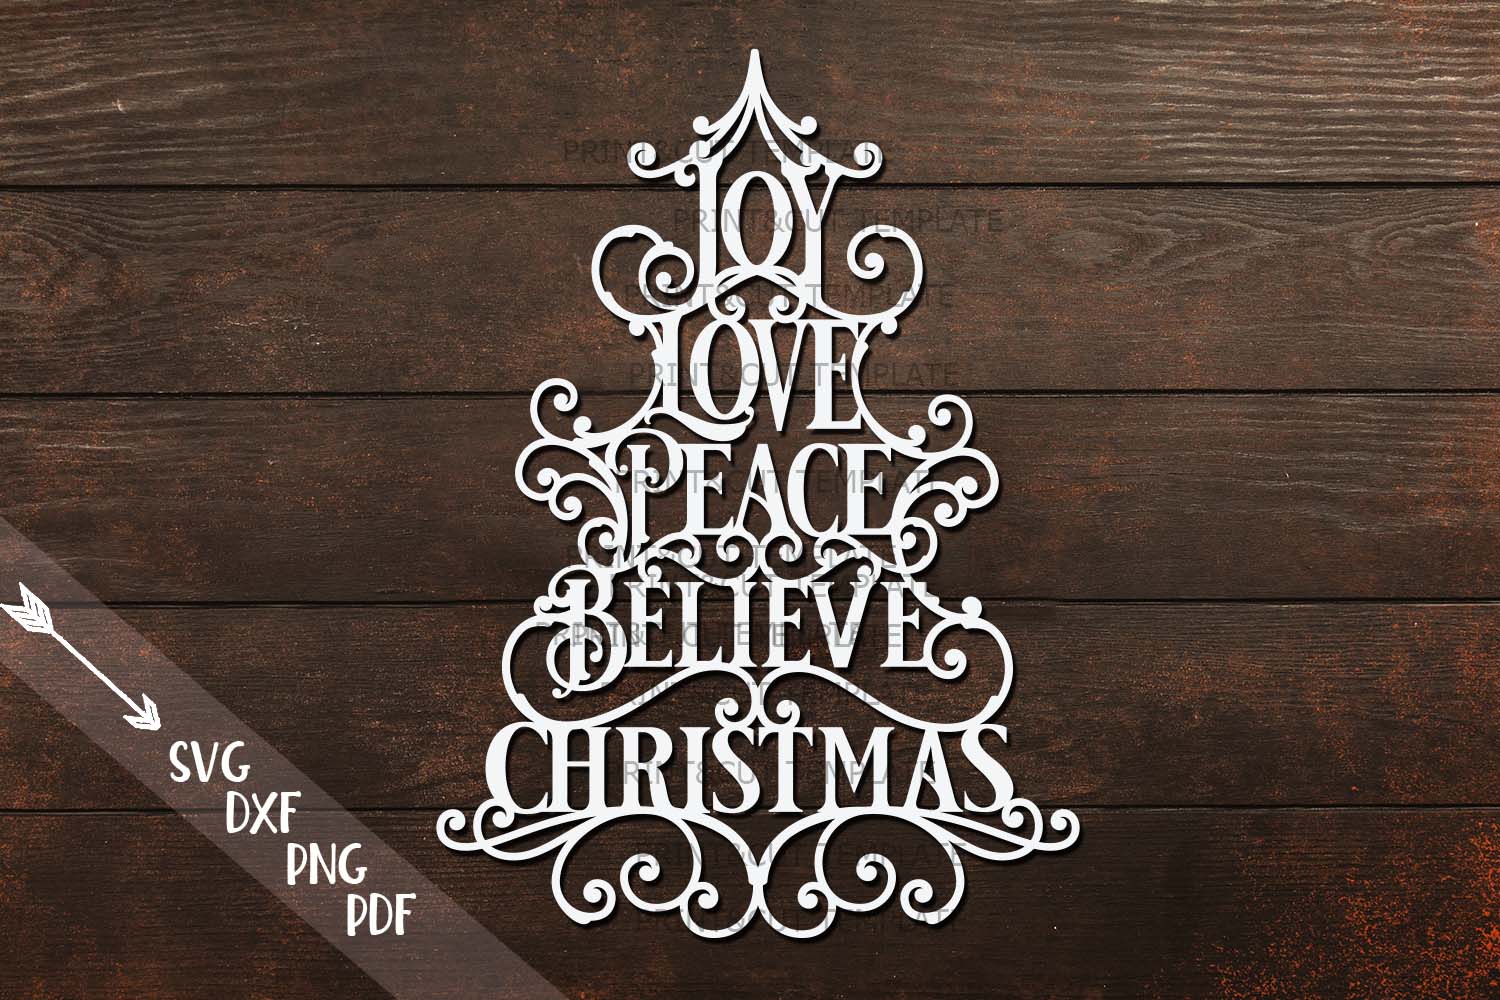 Download Joy Love Peace Believe Christmas svg dxf pdf cut template (172615) | SVGs | Design Bundles